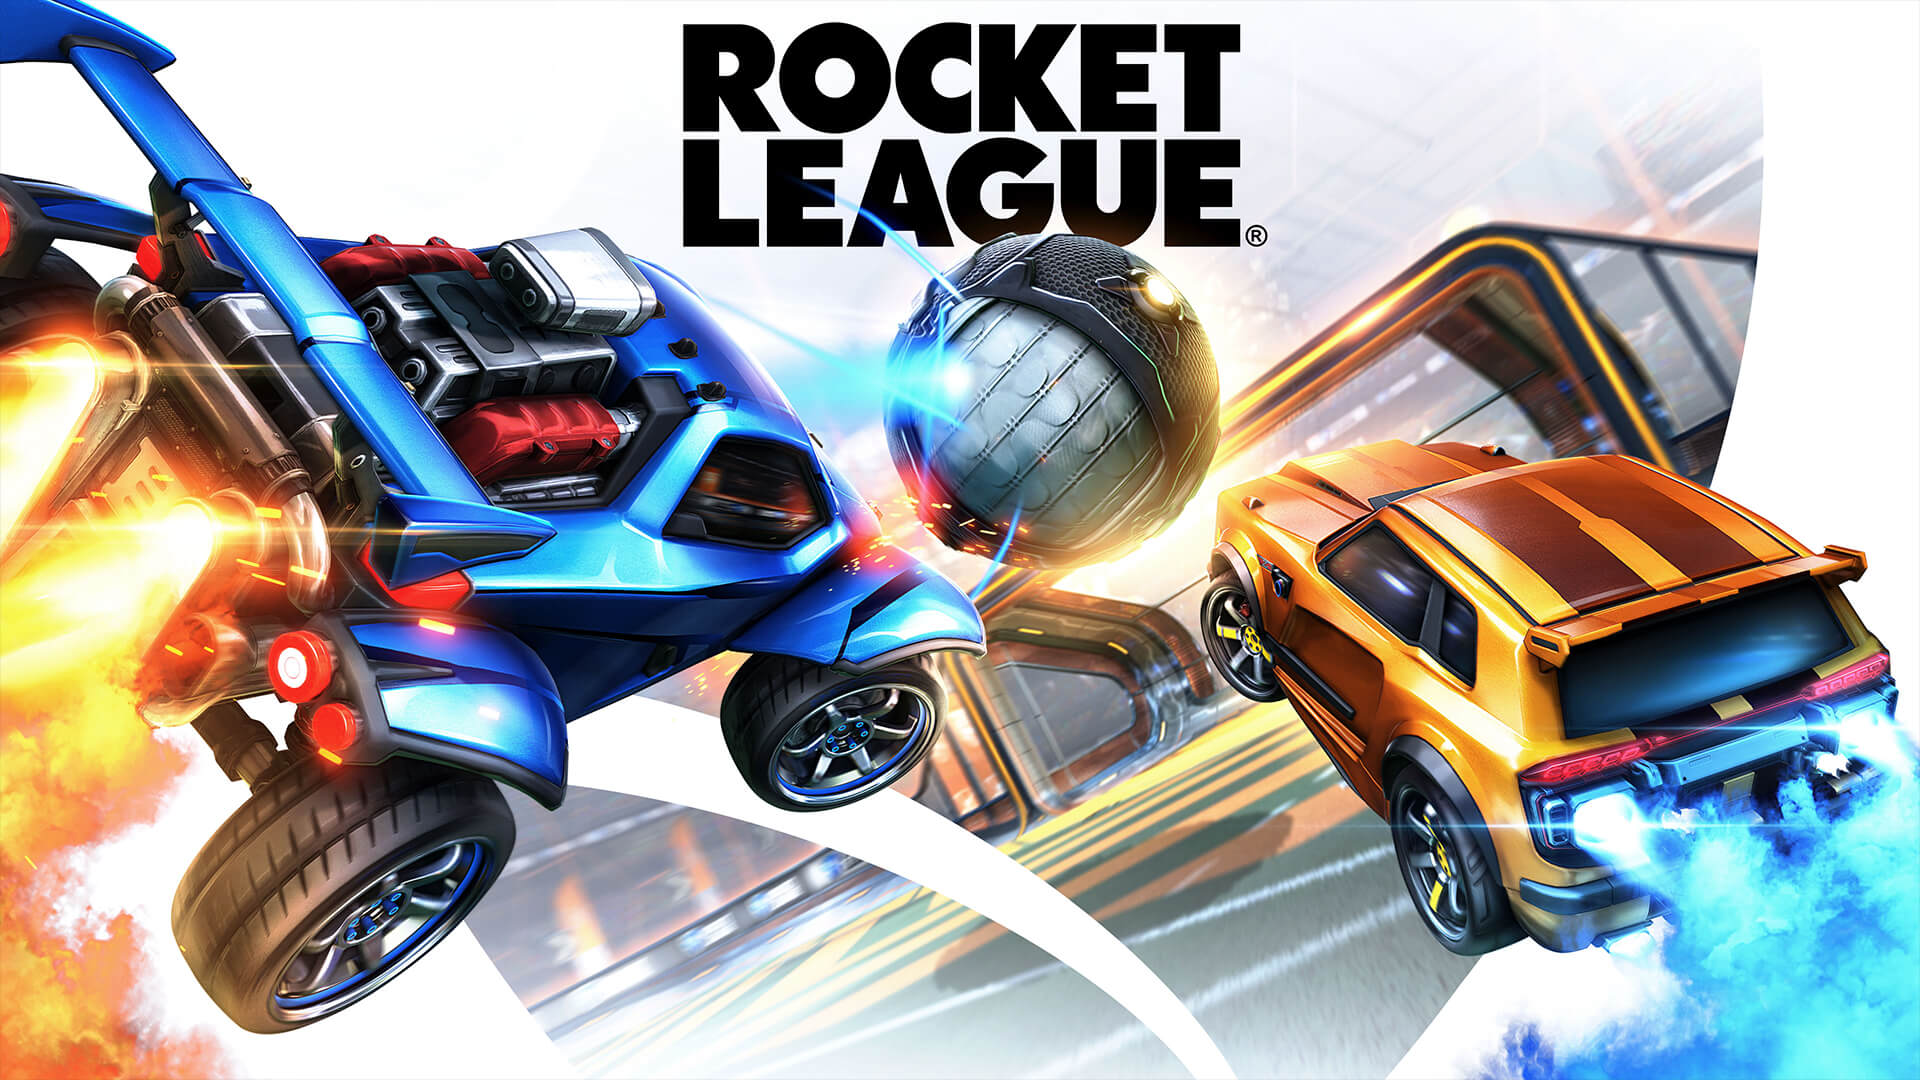 Ya que Rocket League se volverá free to play el 23 de Septiembre, Psyonix quería compartir noticias acerca de la Temporada 1 